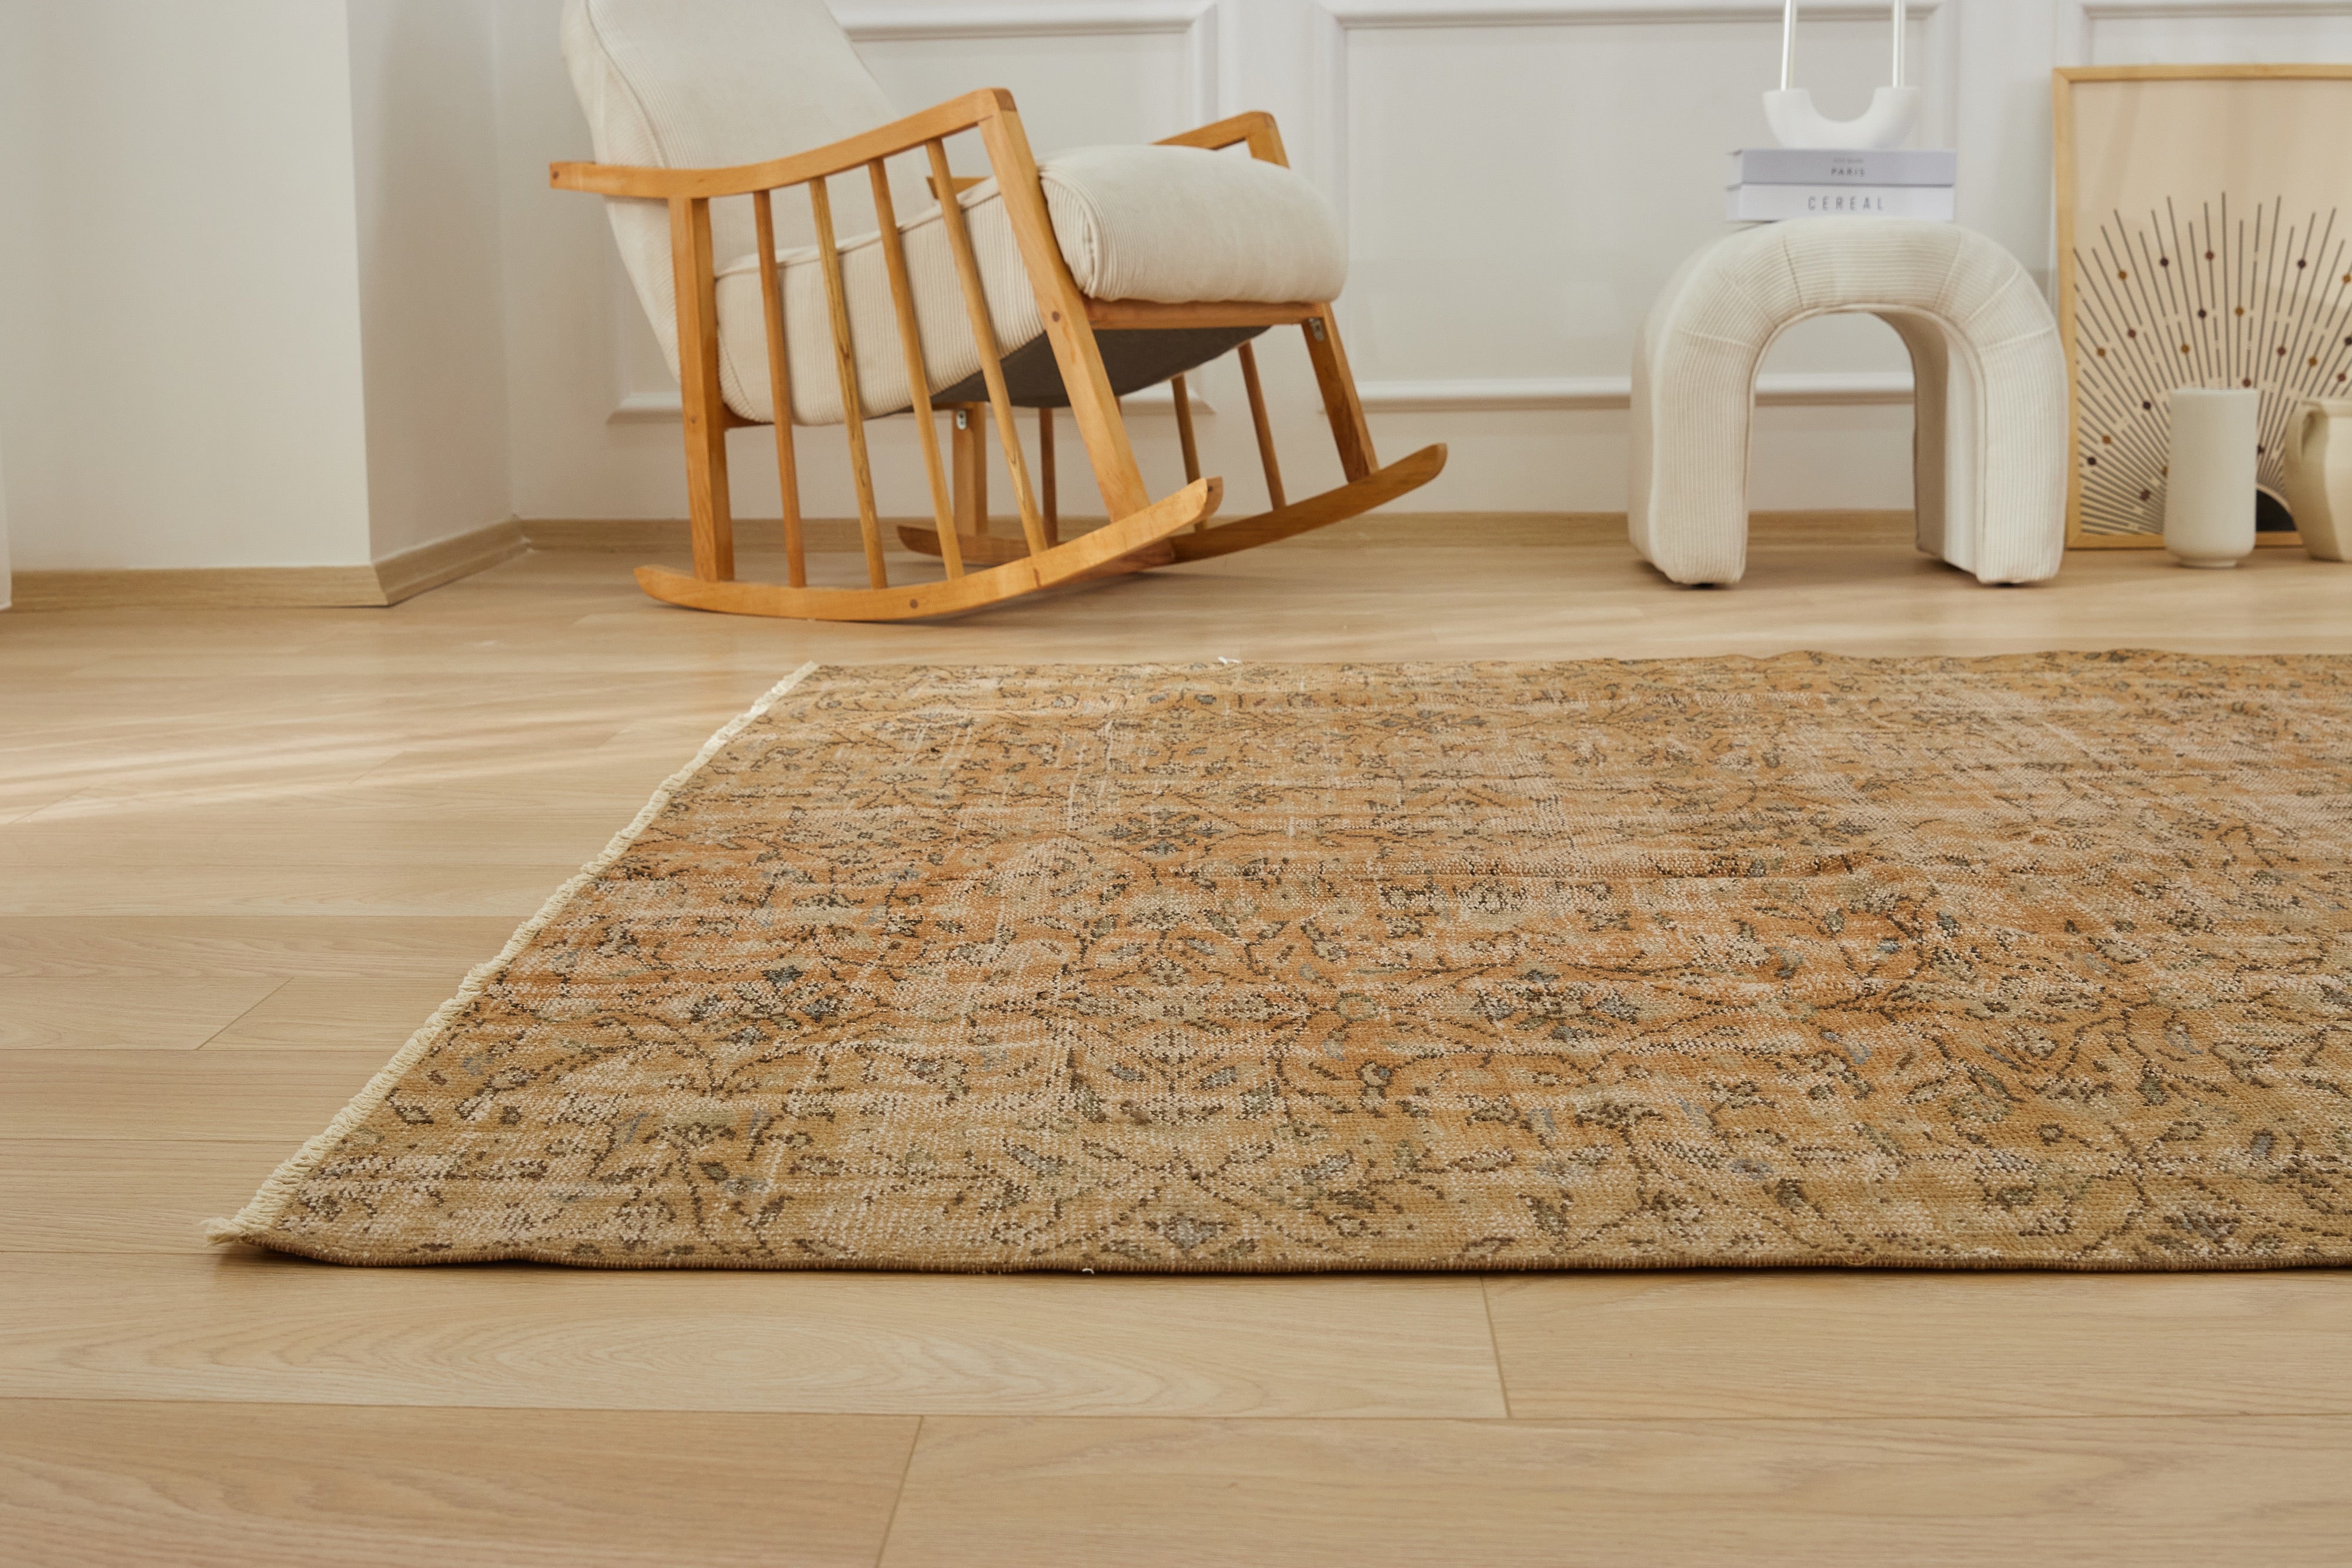 1970's Vintage Refinement - Archna's Luxurious Carpet Weaving